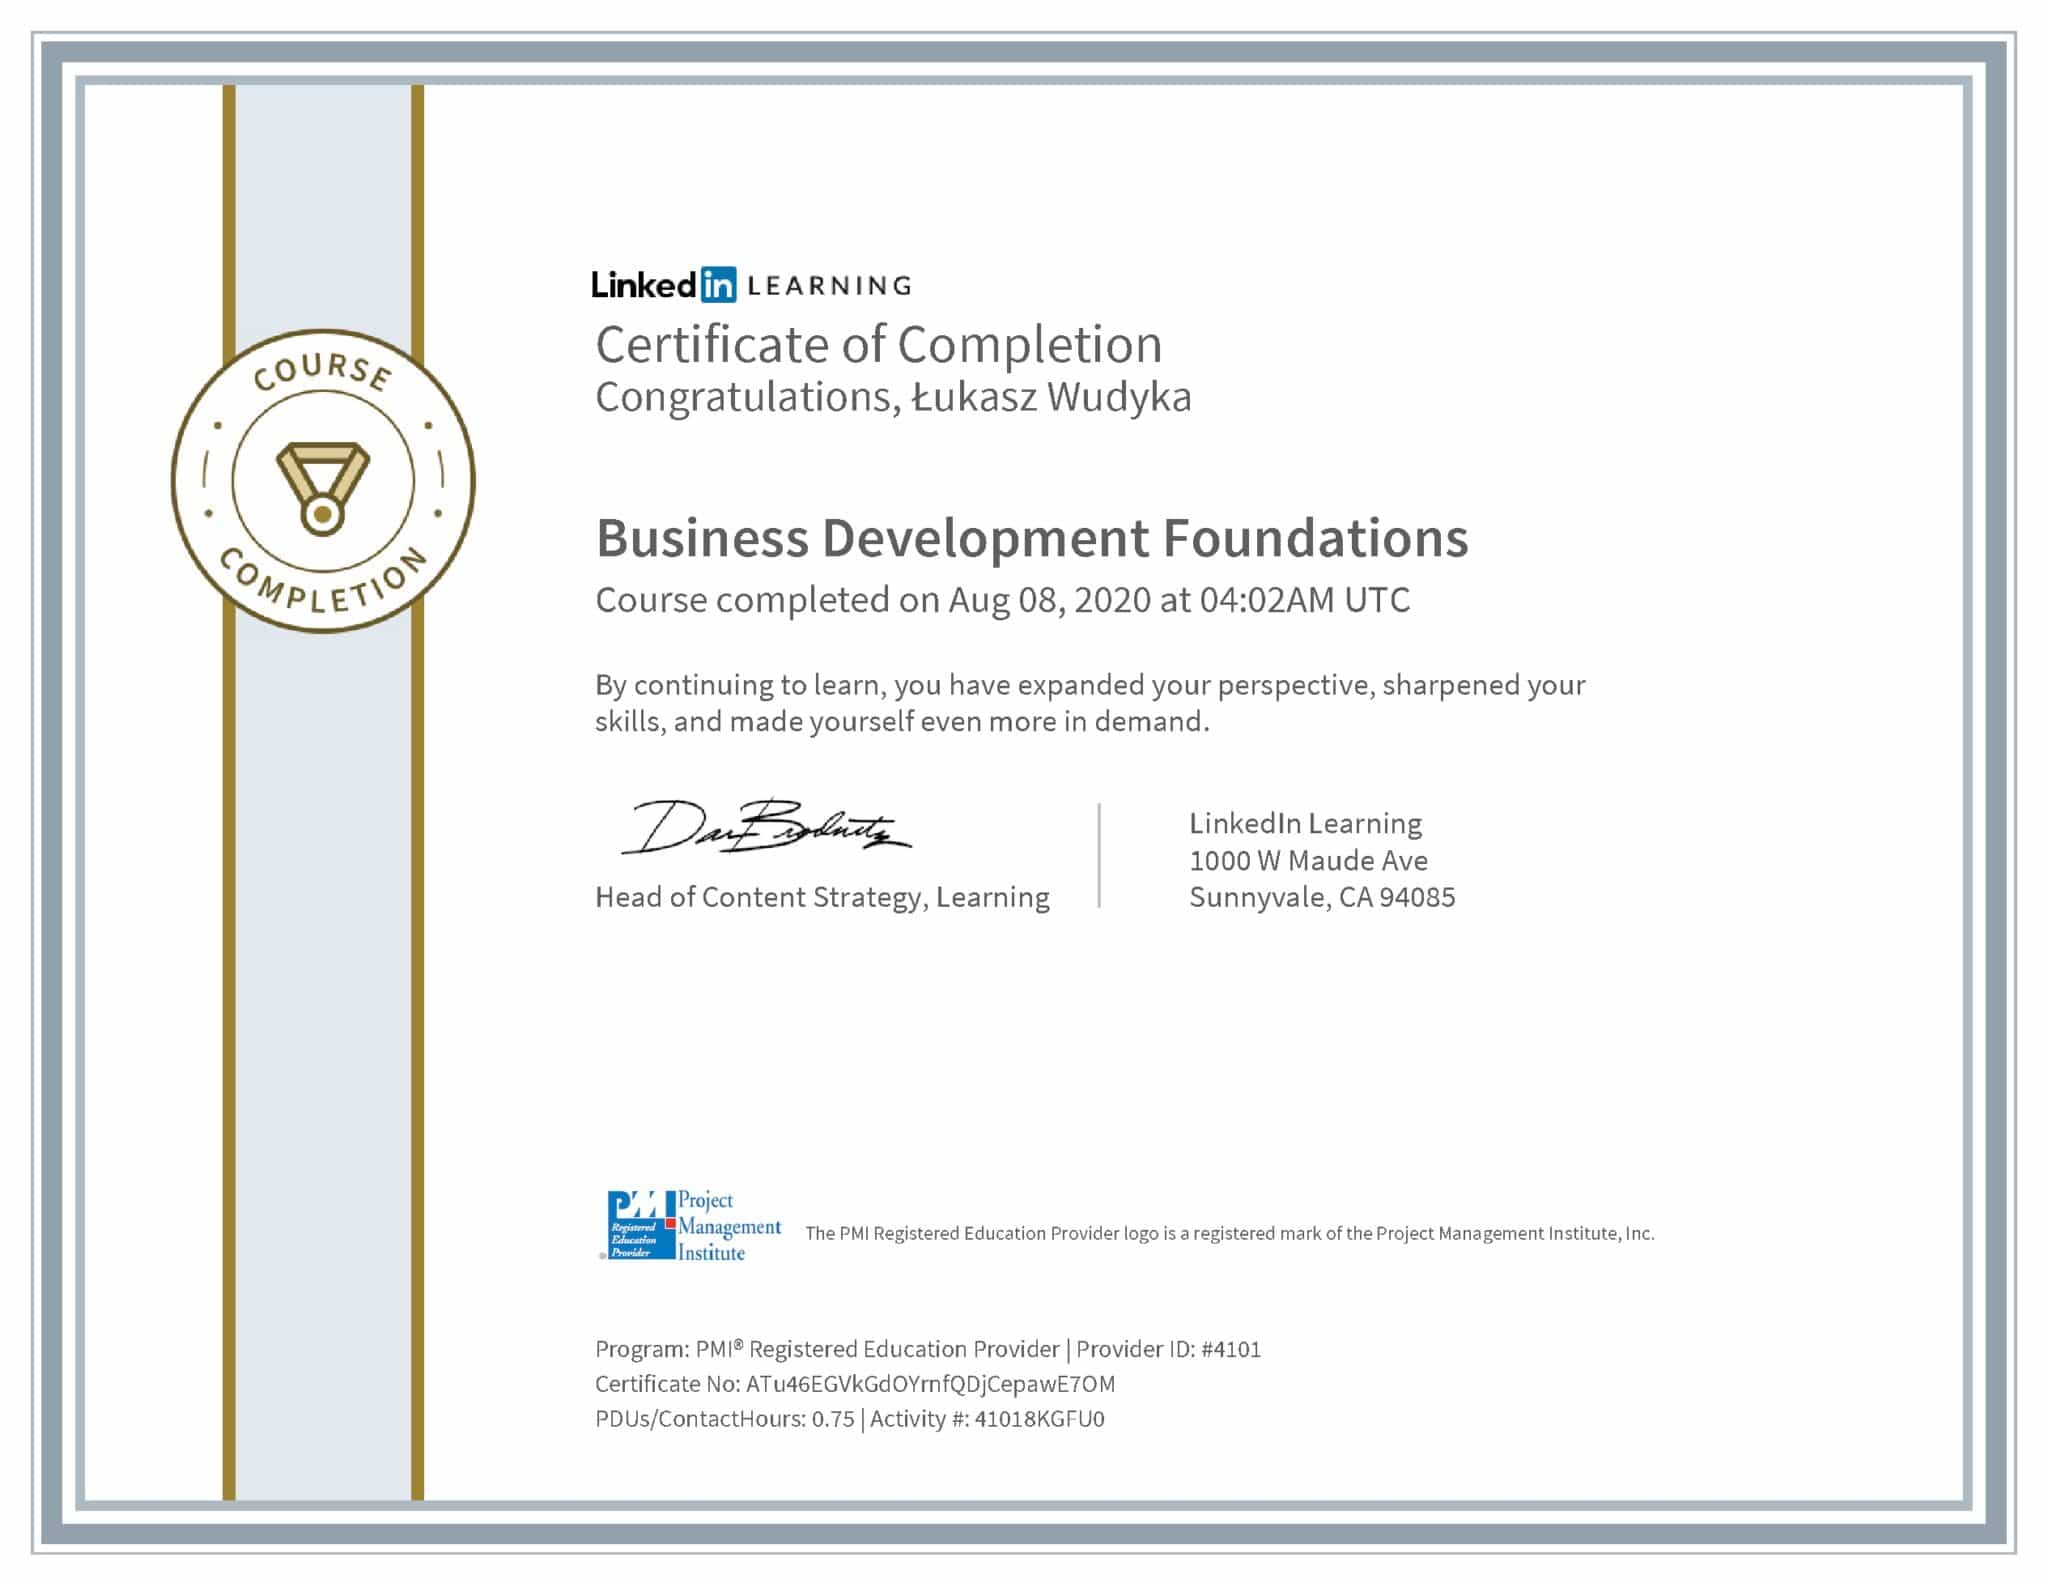 Łukasz Wudyka certyfikat LinkedIn Business Development Foundations PMI